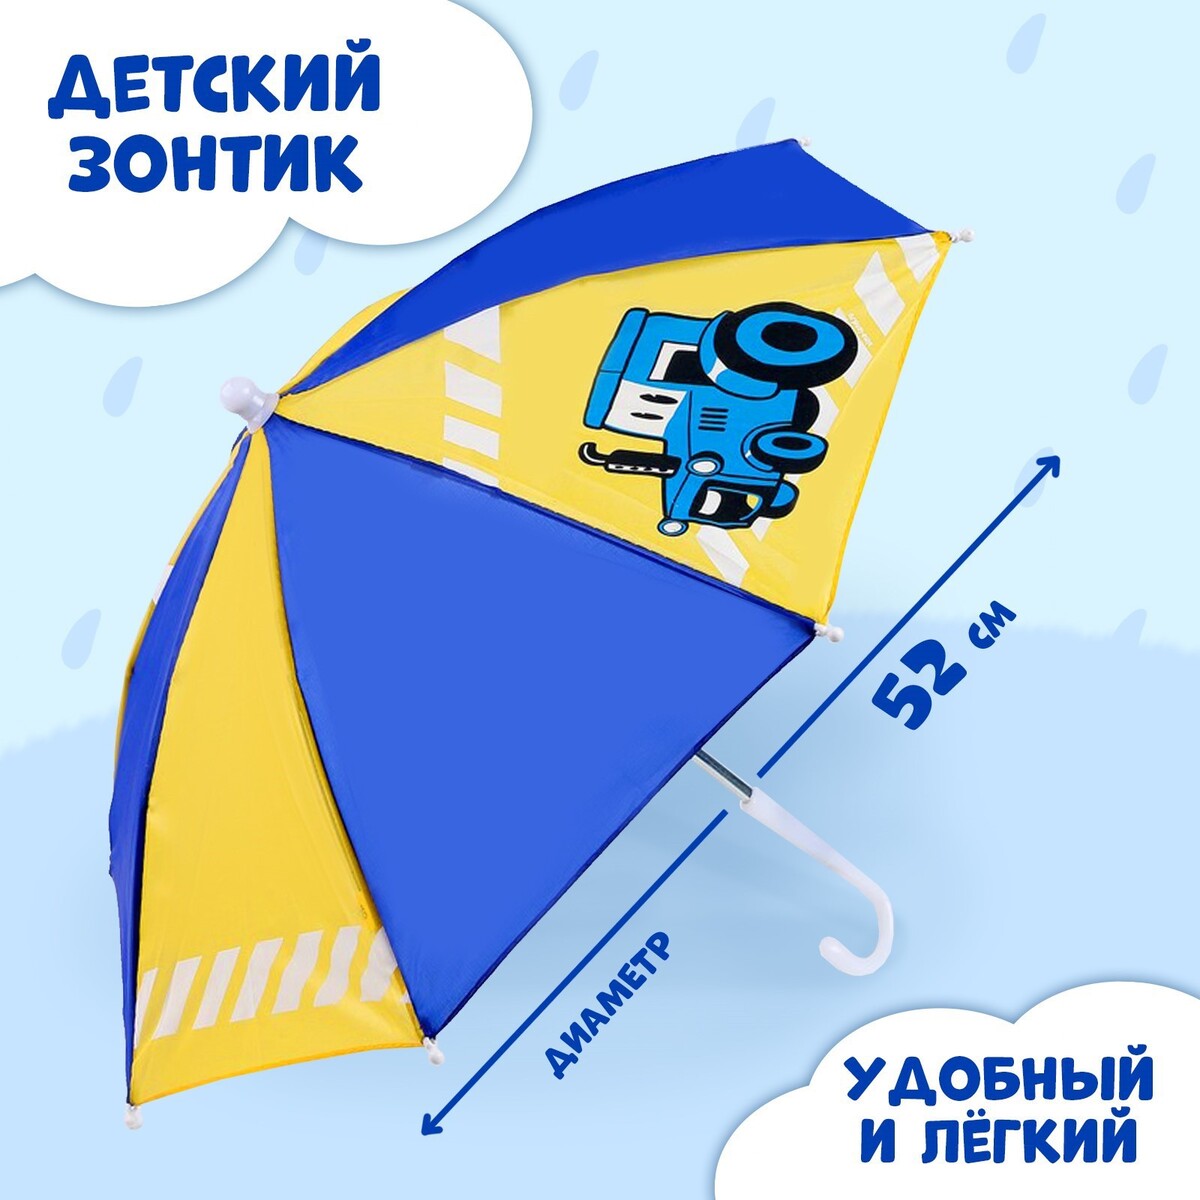 Зонт детский красный зонт с логотипом 30 см moschino детский